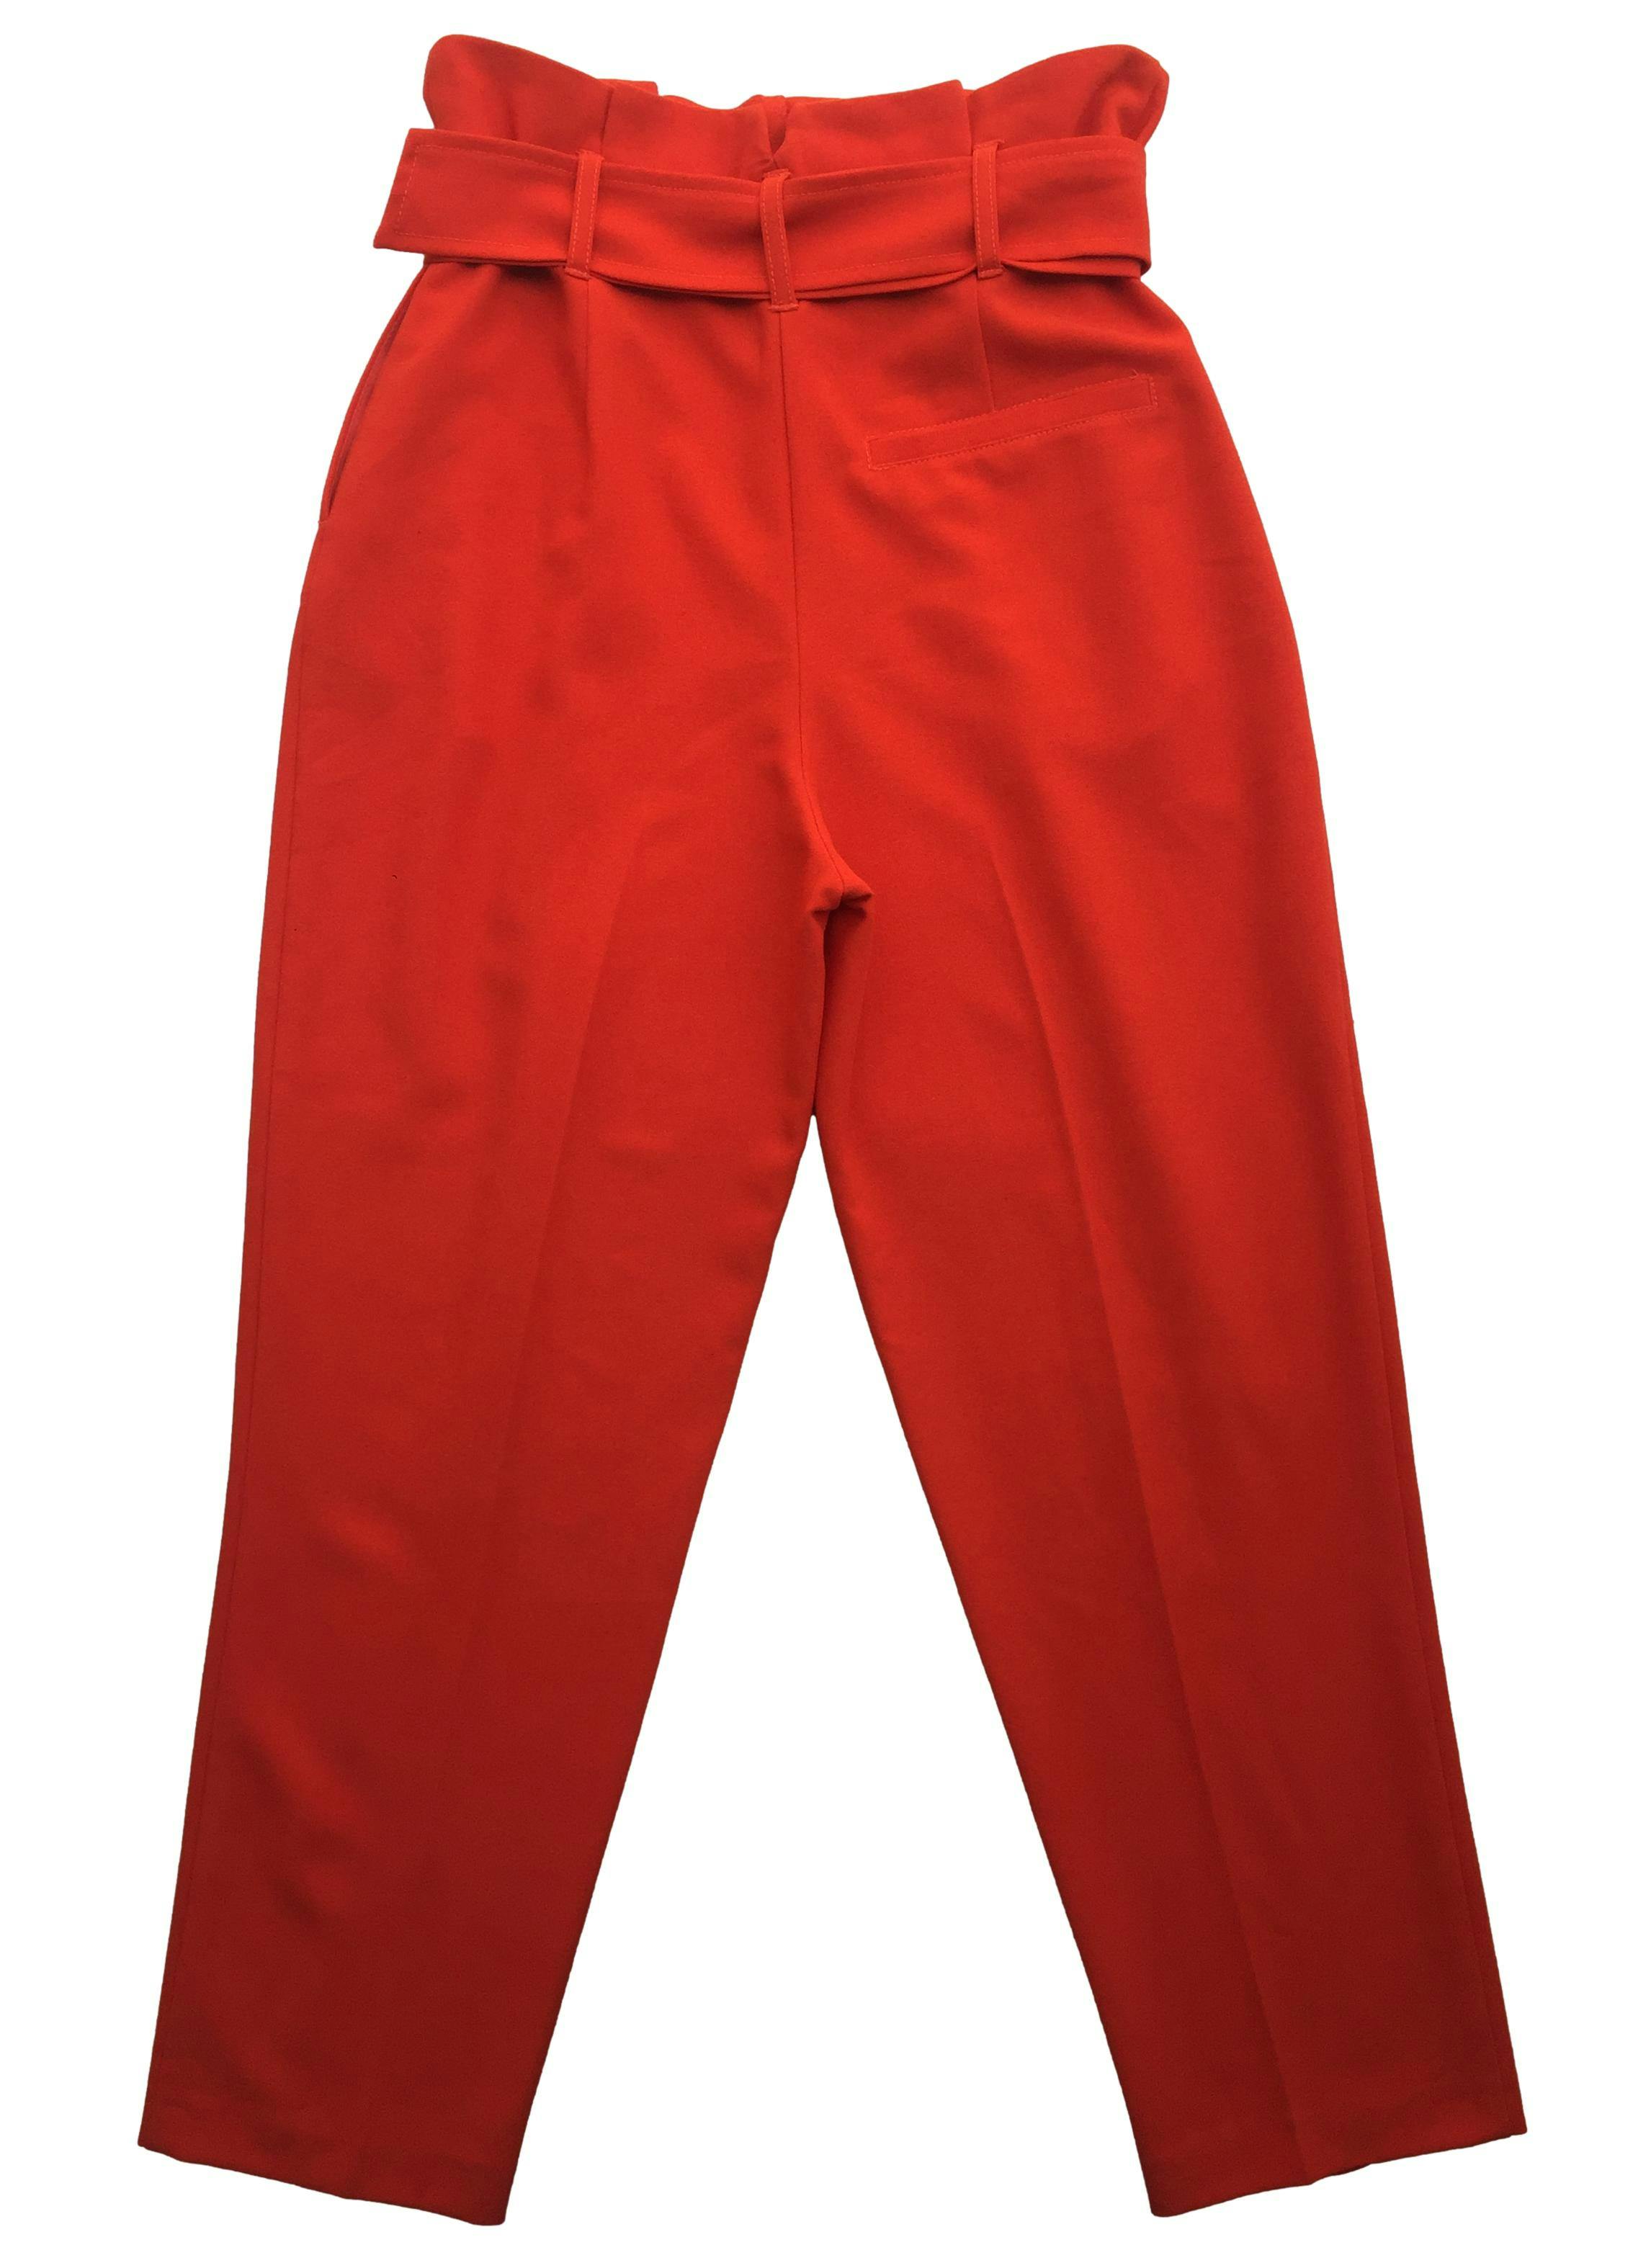 Pantalón Topshop naranja paper bag con cinturón, bolsillos laterales. Cintura 70cm Tiro 36cm Largo 95cm